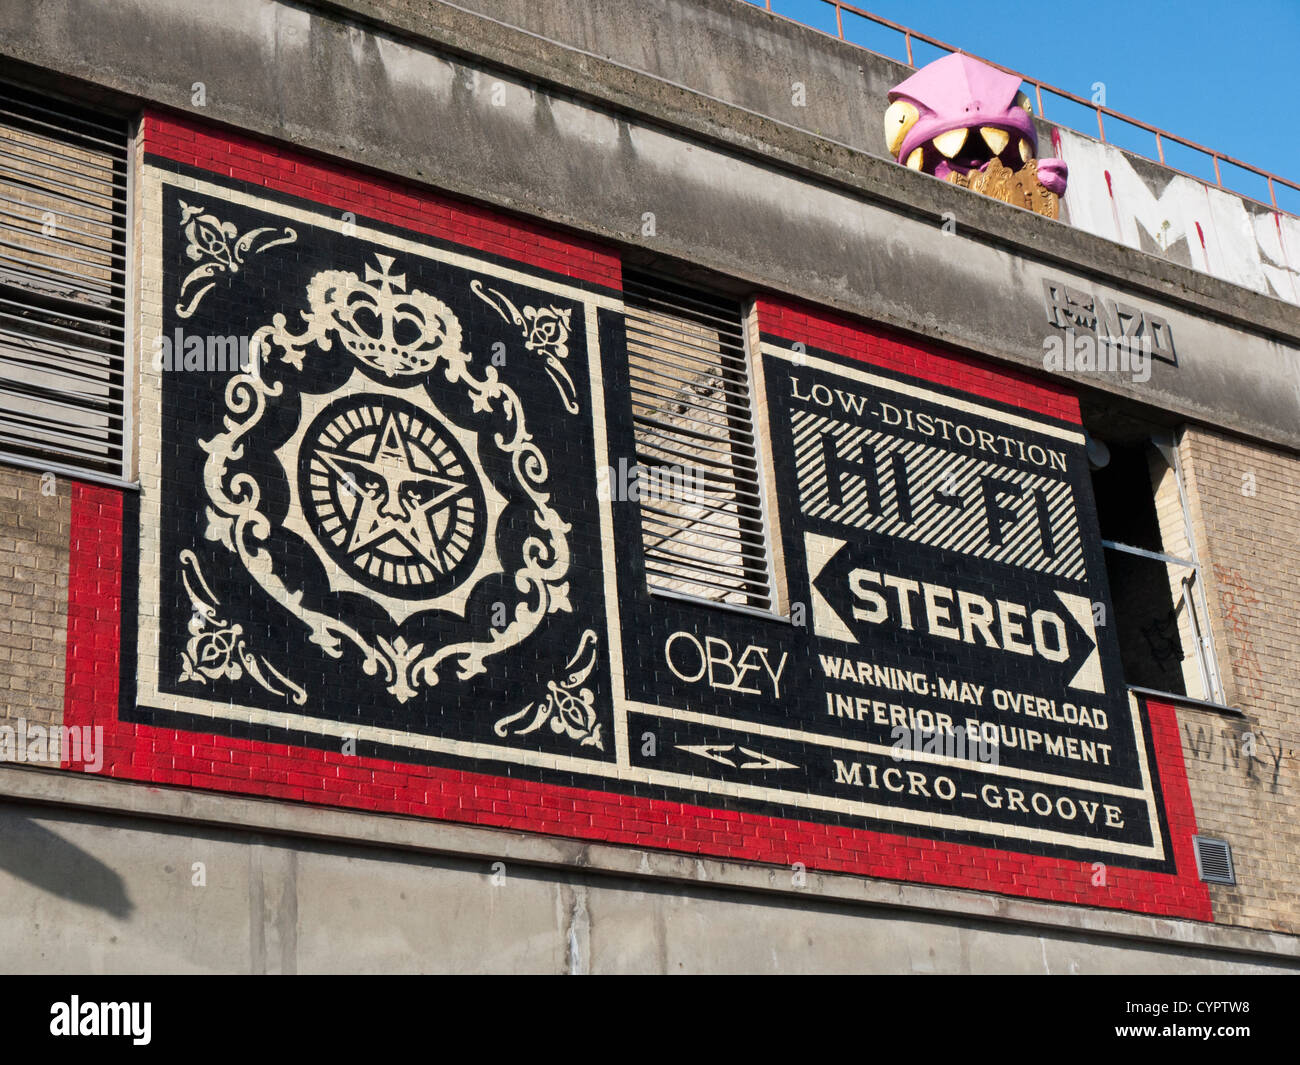 Arte di strada dall'artista Shepard Fairey prodotto in anticipo della sua mostra nella zona est di Londra Foto Stock